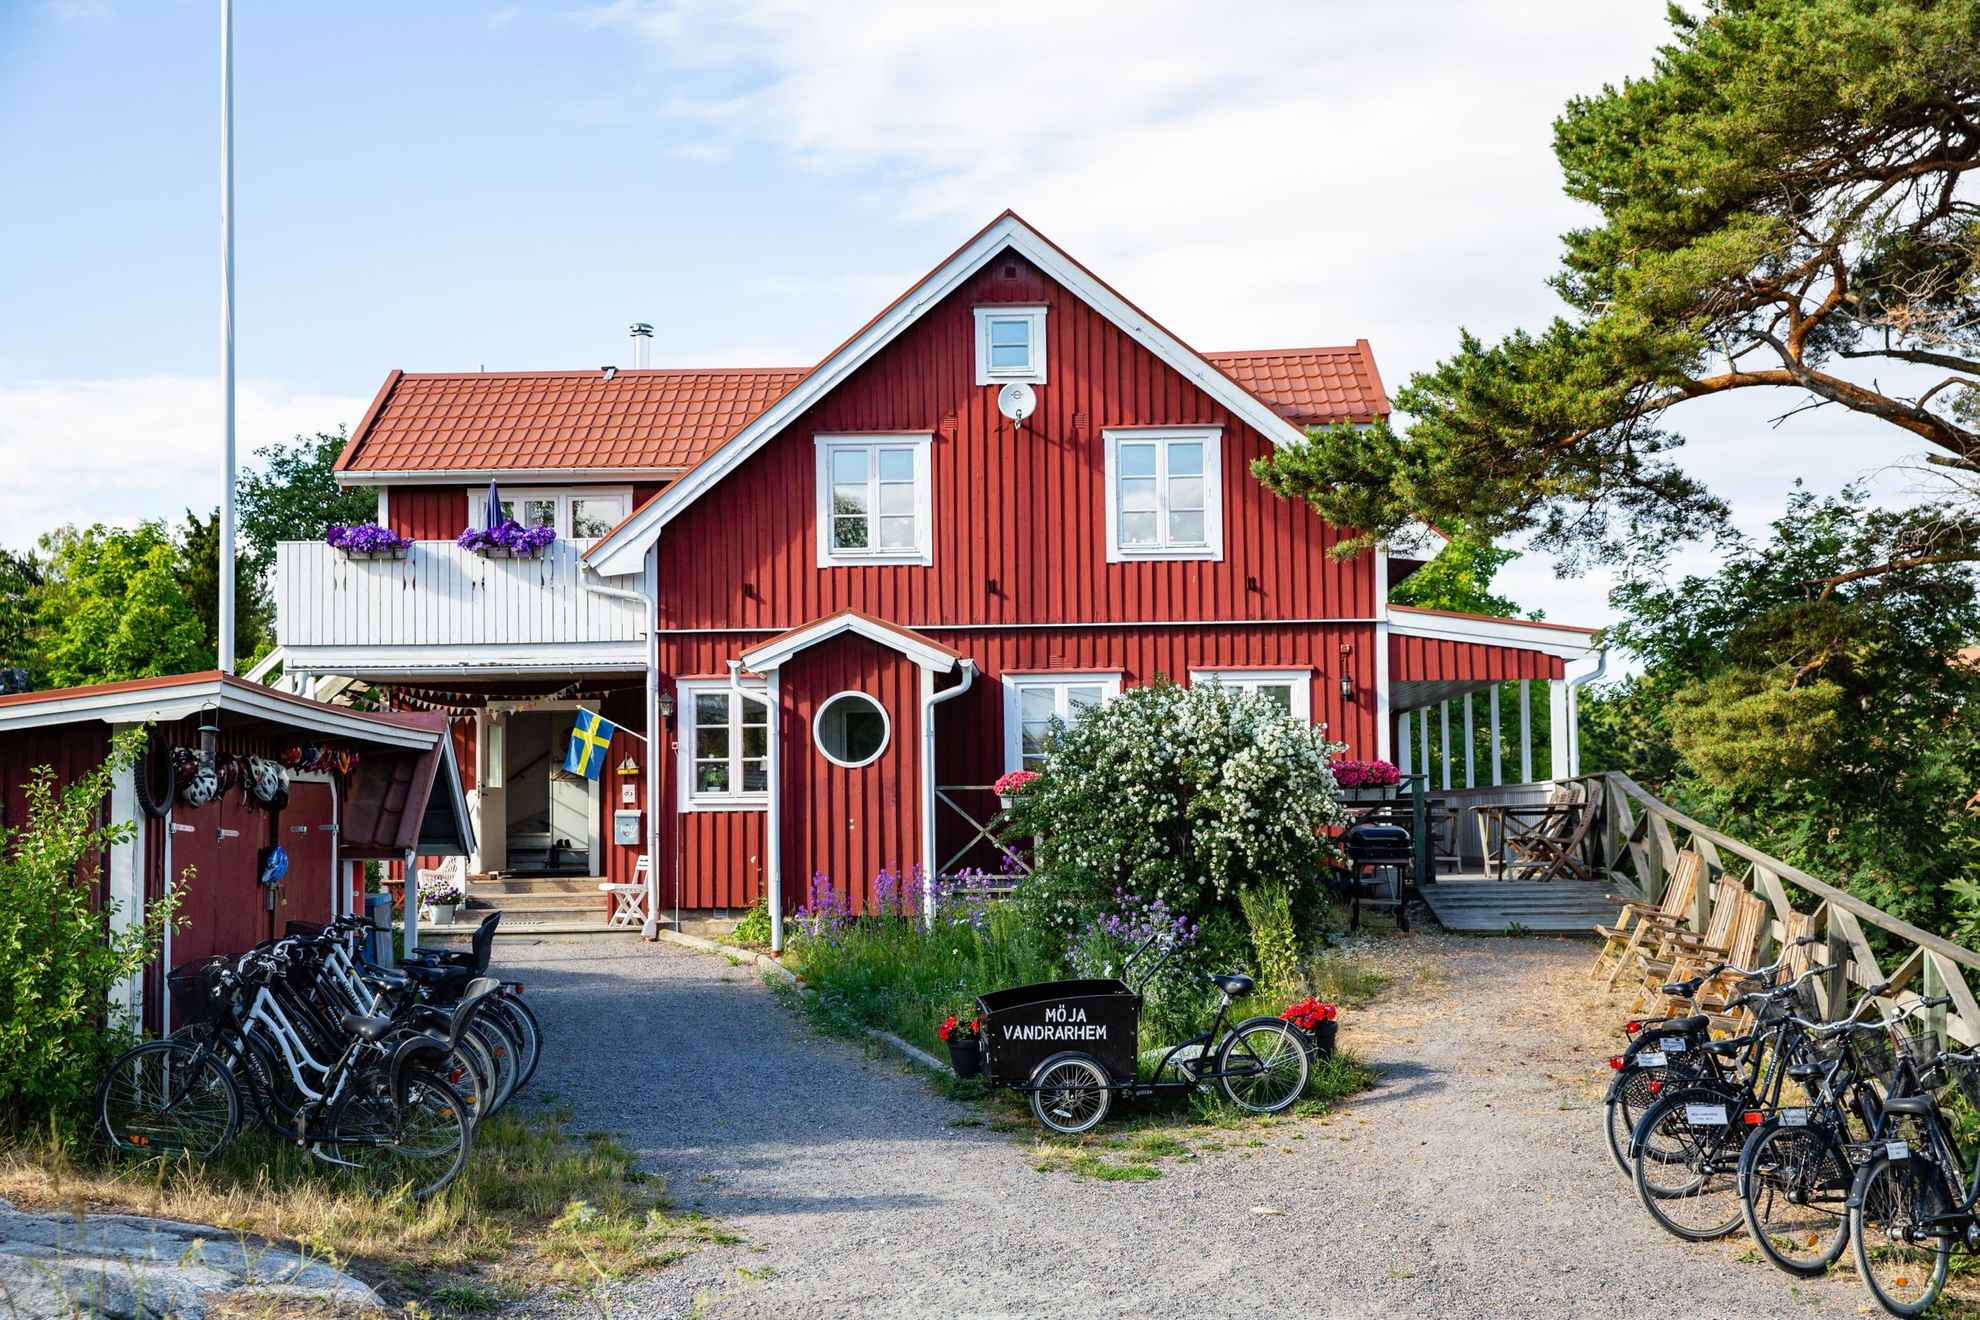 Une maison en bois rouge avec des bordures blanches en été. Il y a plusieurs vélos à l'extérieur de la maison. Sur l'un des vélos, il est écrit "Möja Vandrarhem".